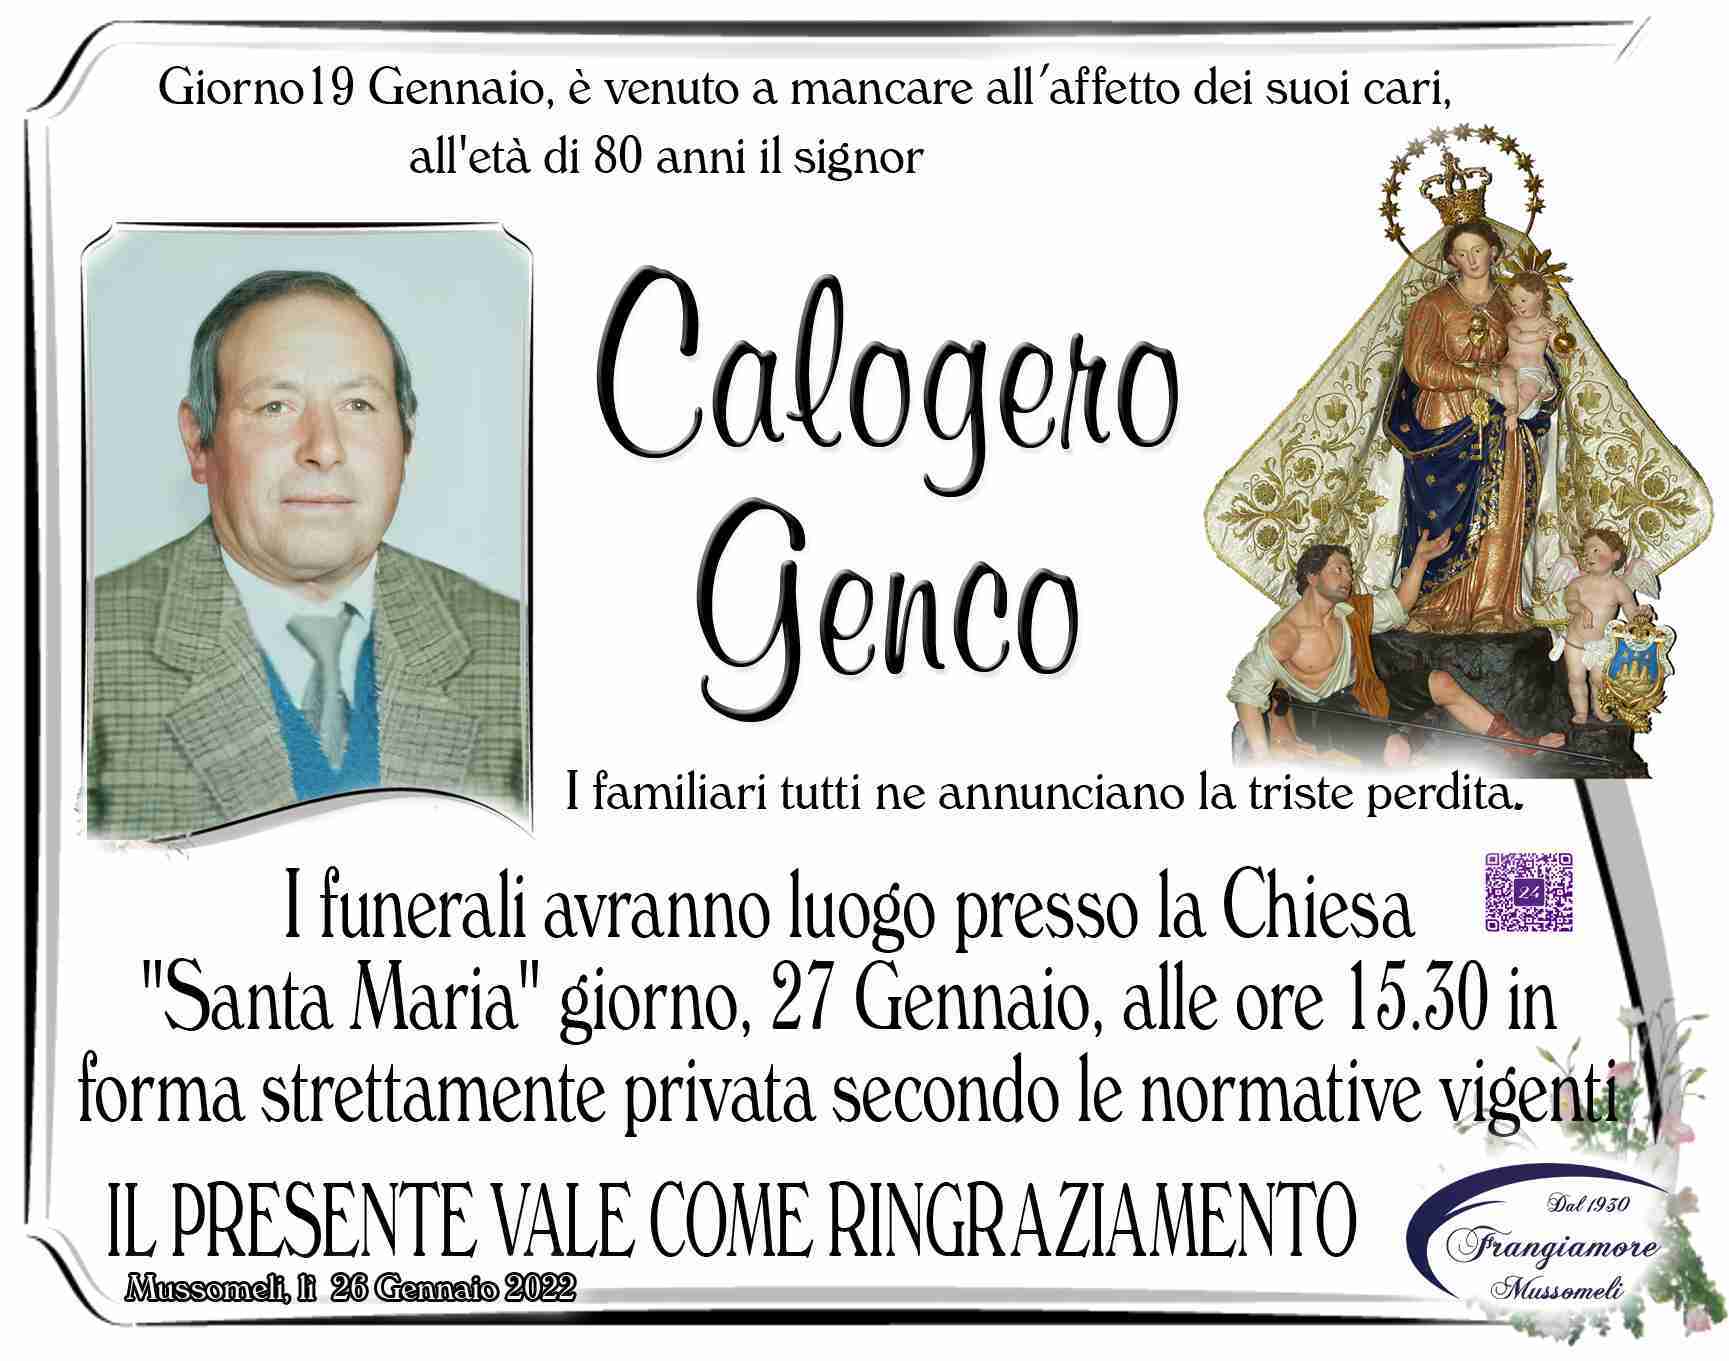 Calogero Genco